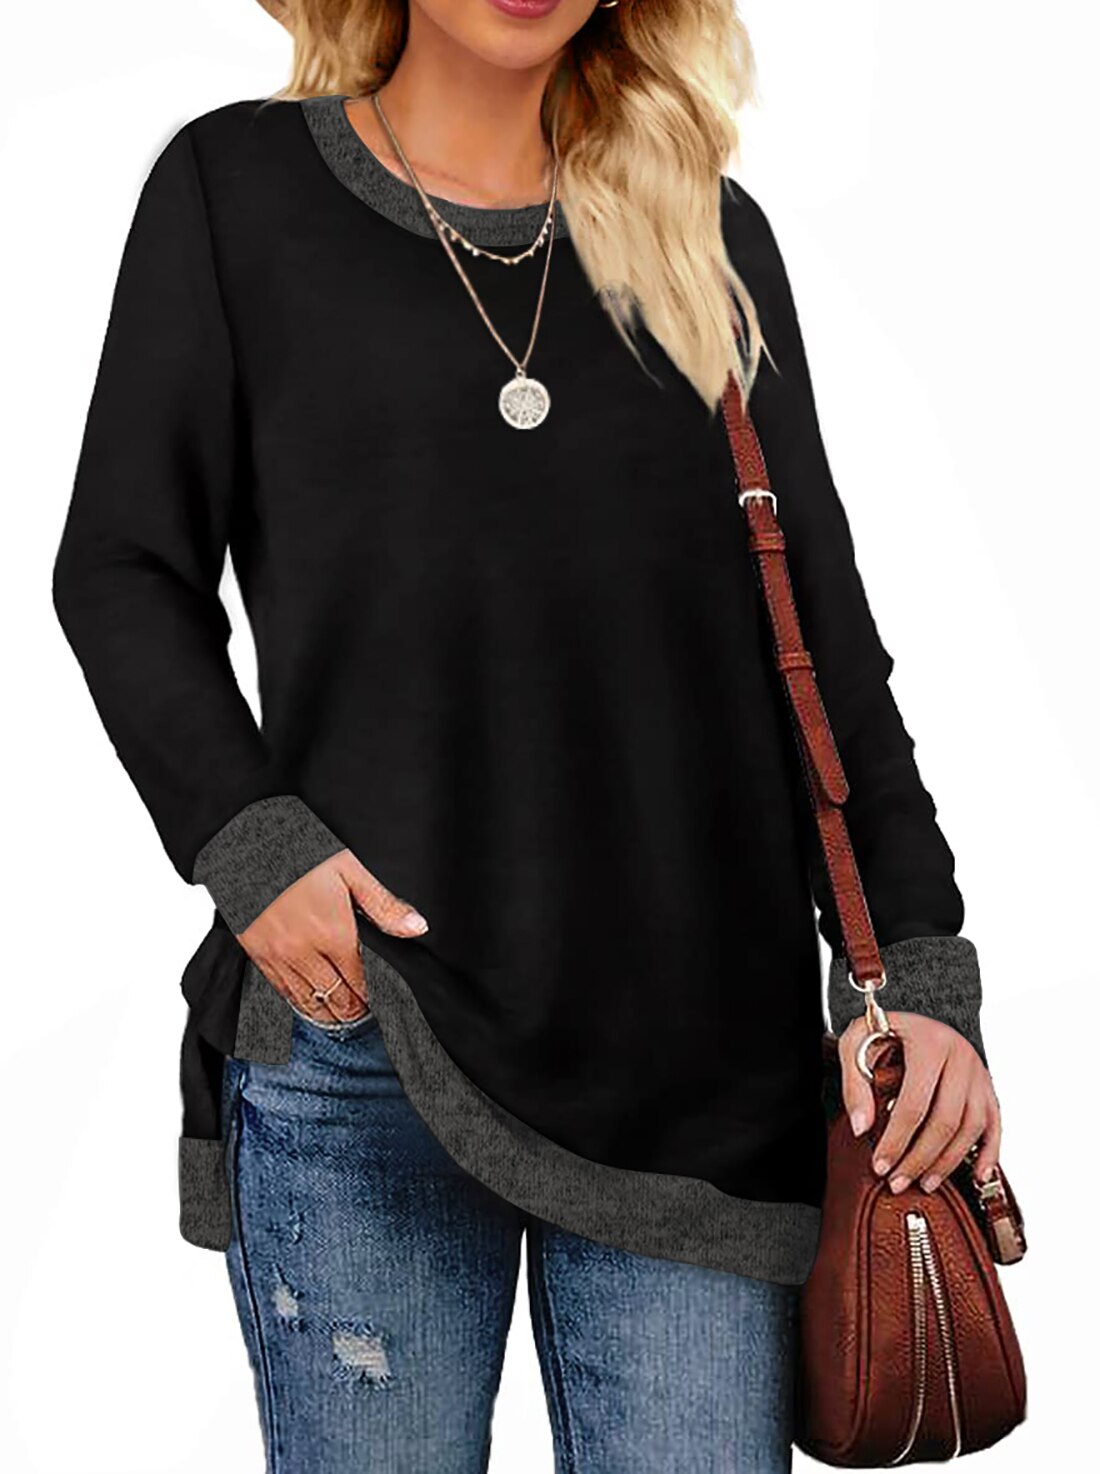 Fantaslook Sweatshirt for Women Long Sleeve Tunic Tops Color Block ...